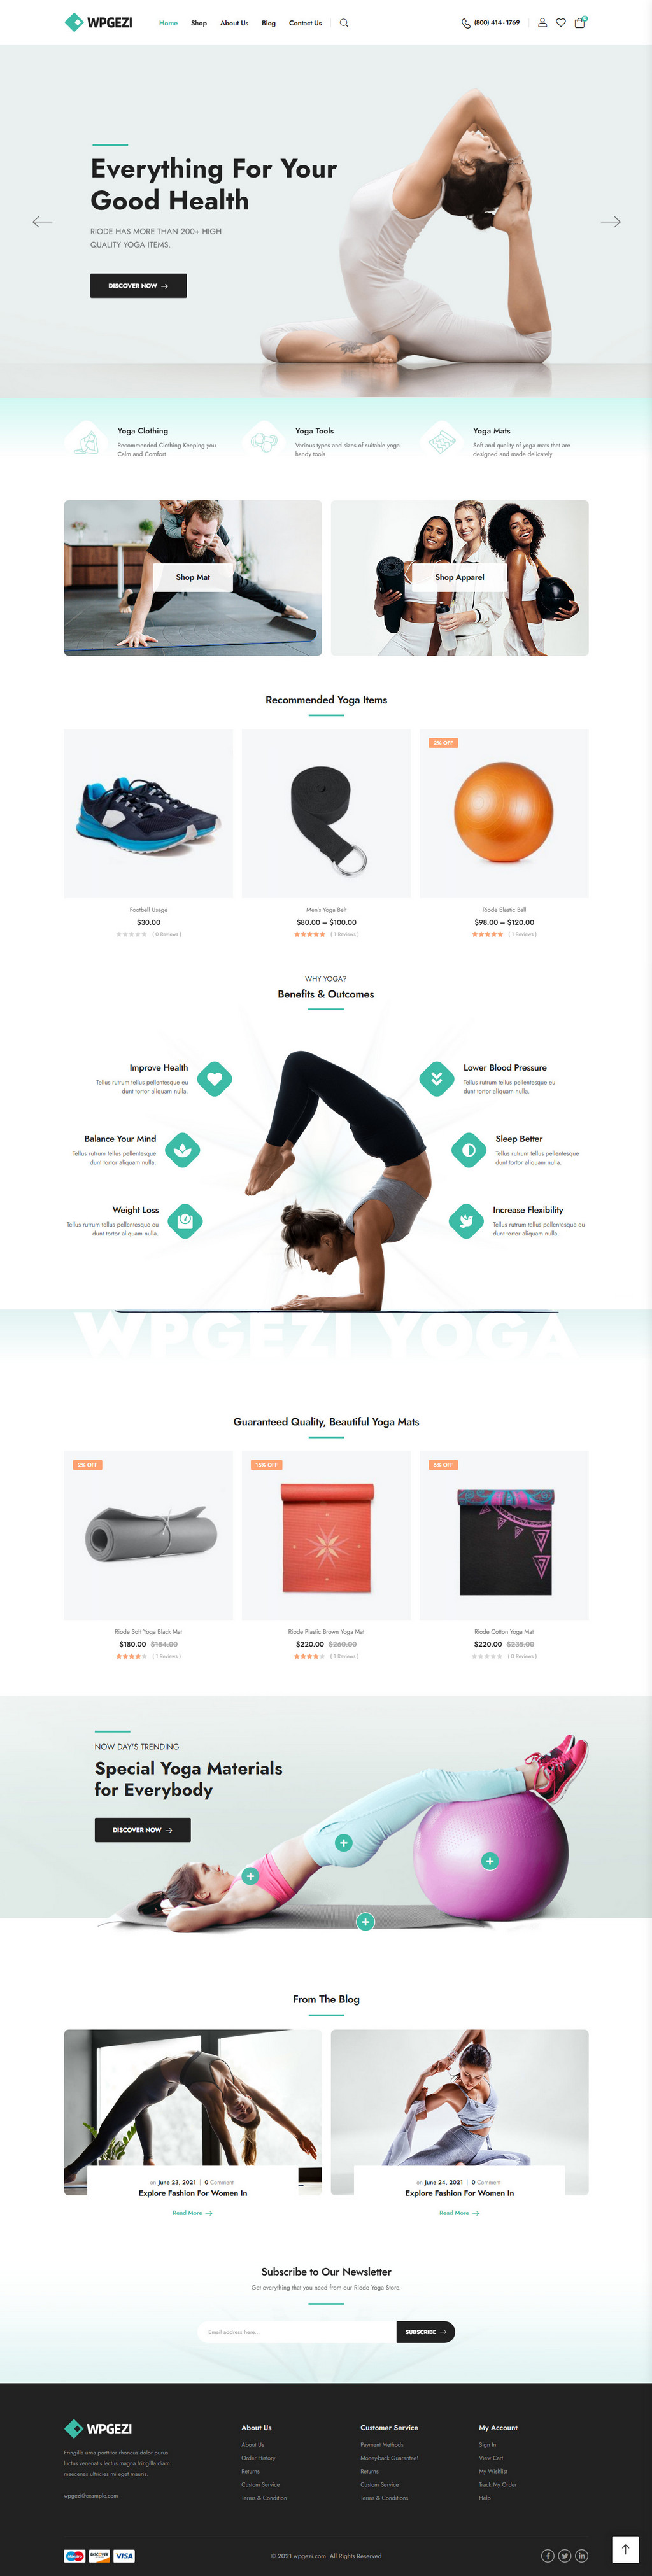 瑜伽健身用品商城网站模板。